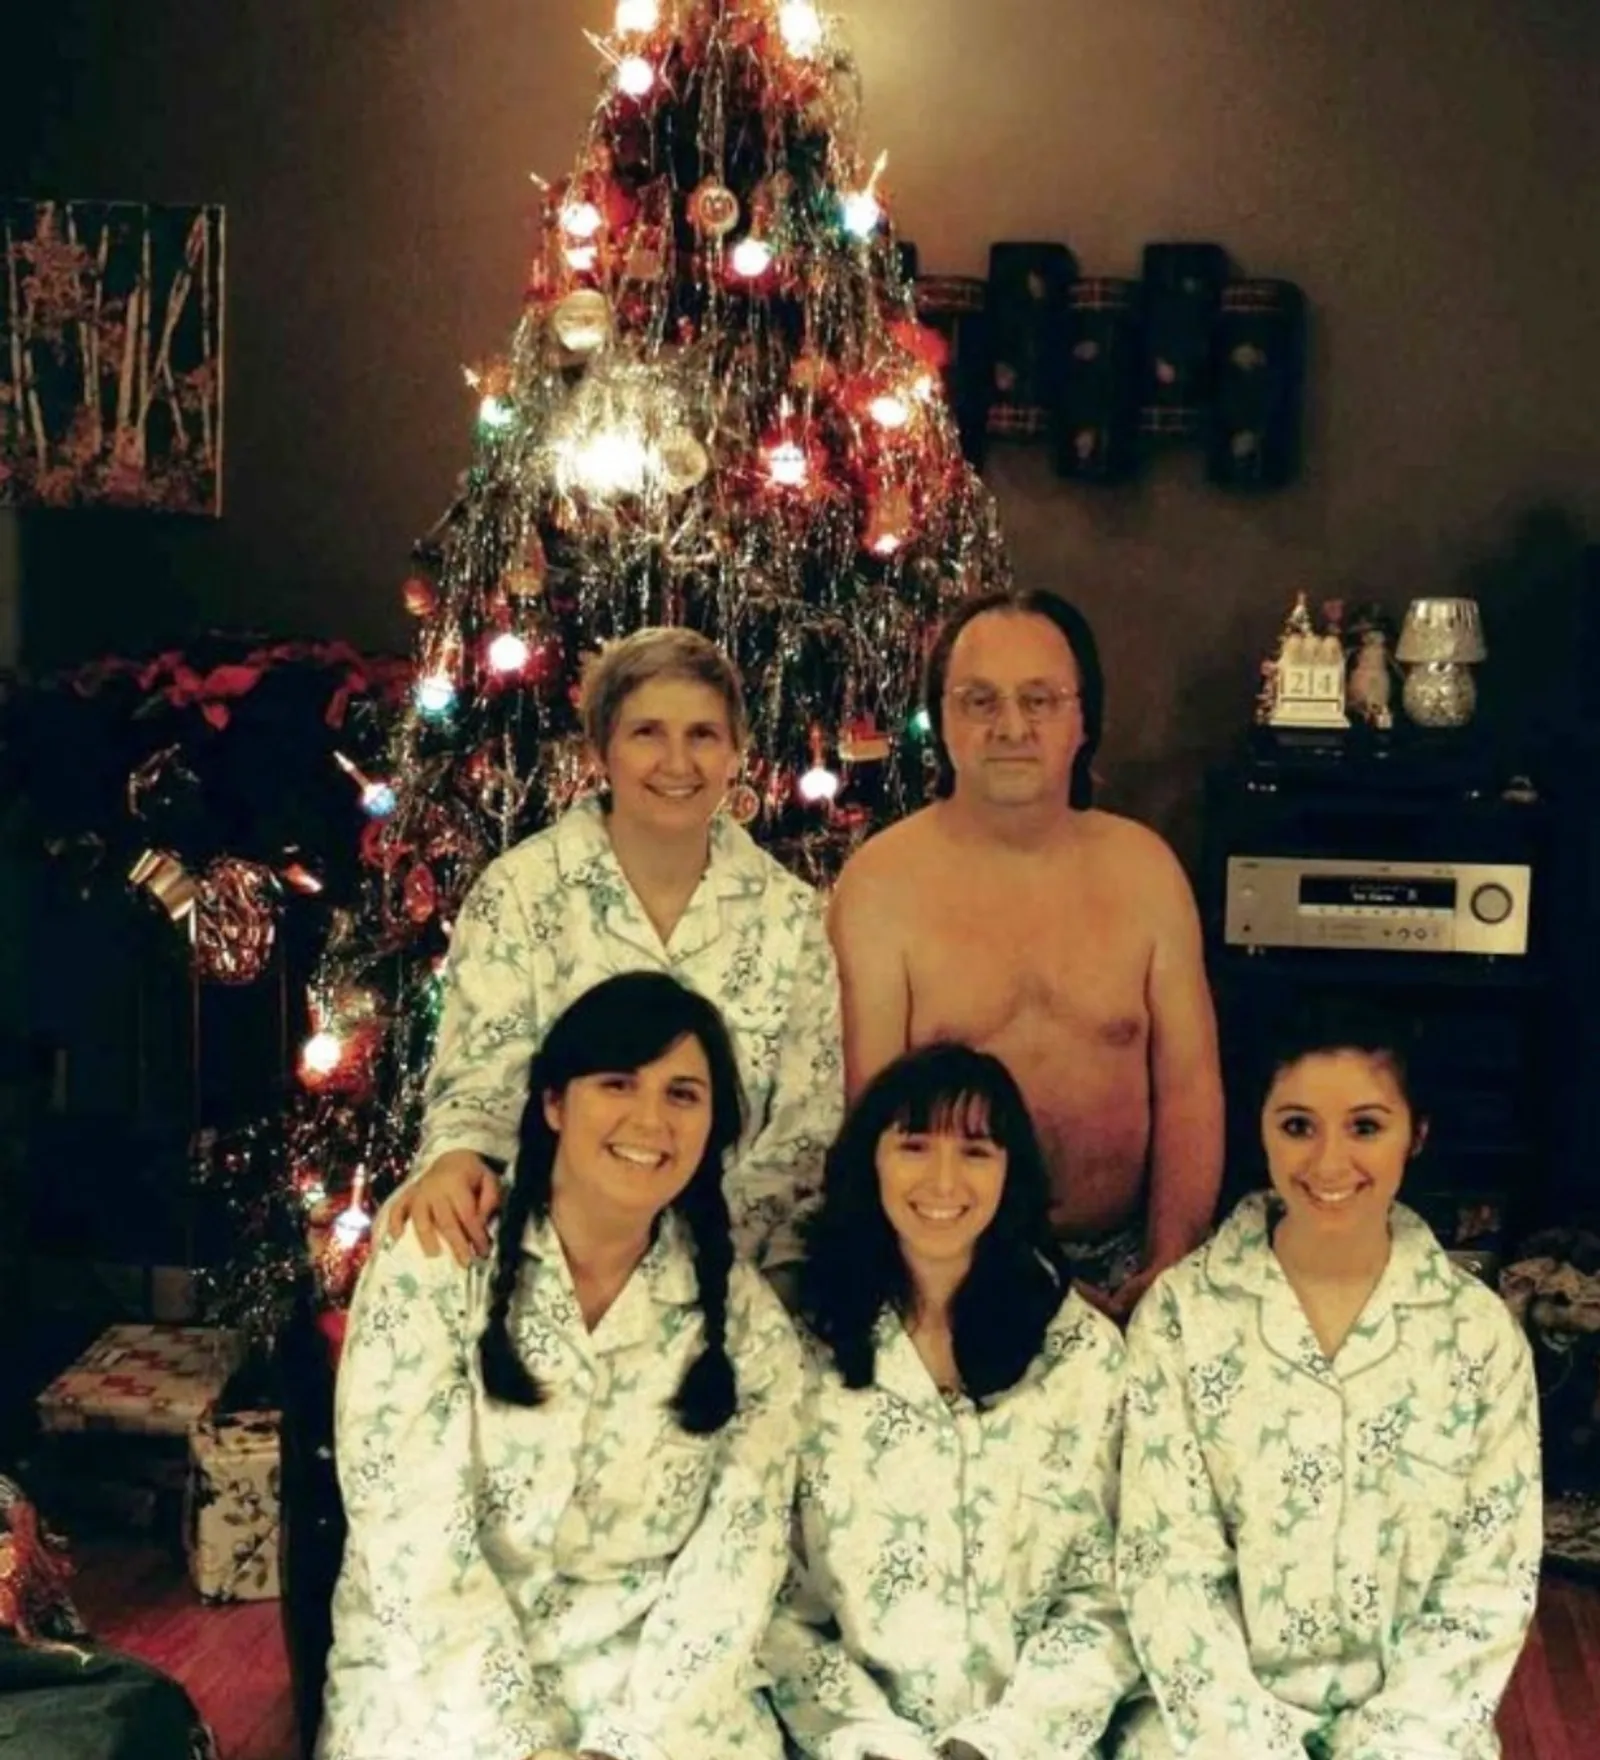 Tampil Beda! Ini 20 Foto Natal Keluarga yang Paling Kocak dan Absurd